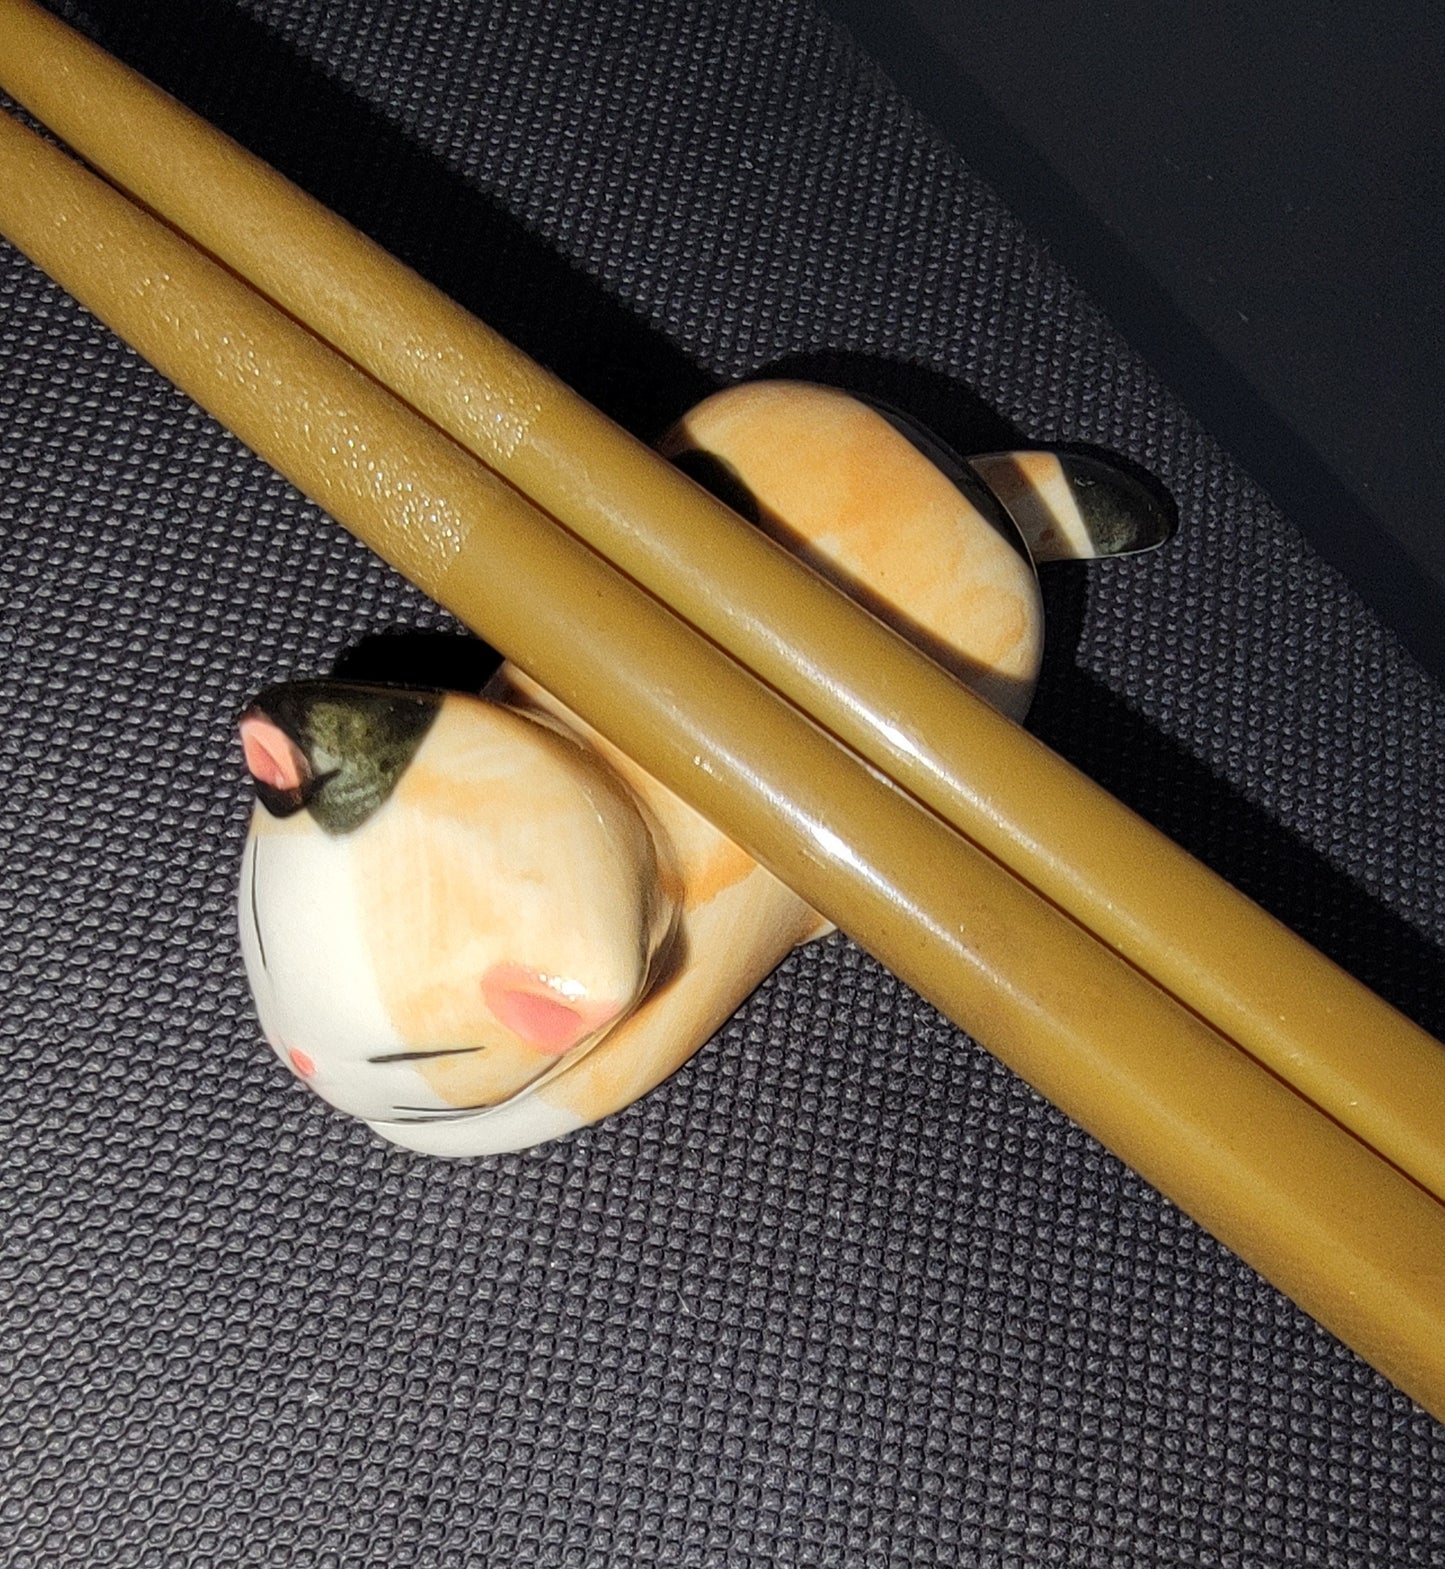 Ceramic Neko Cat Chopstick Rests